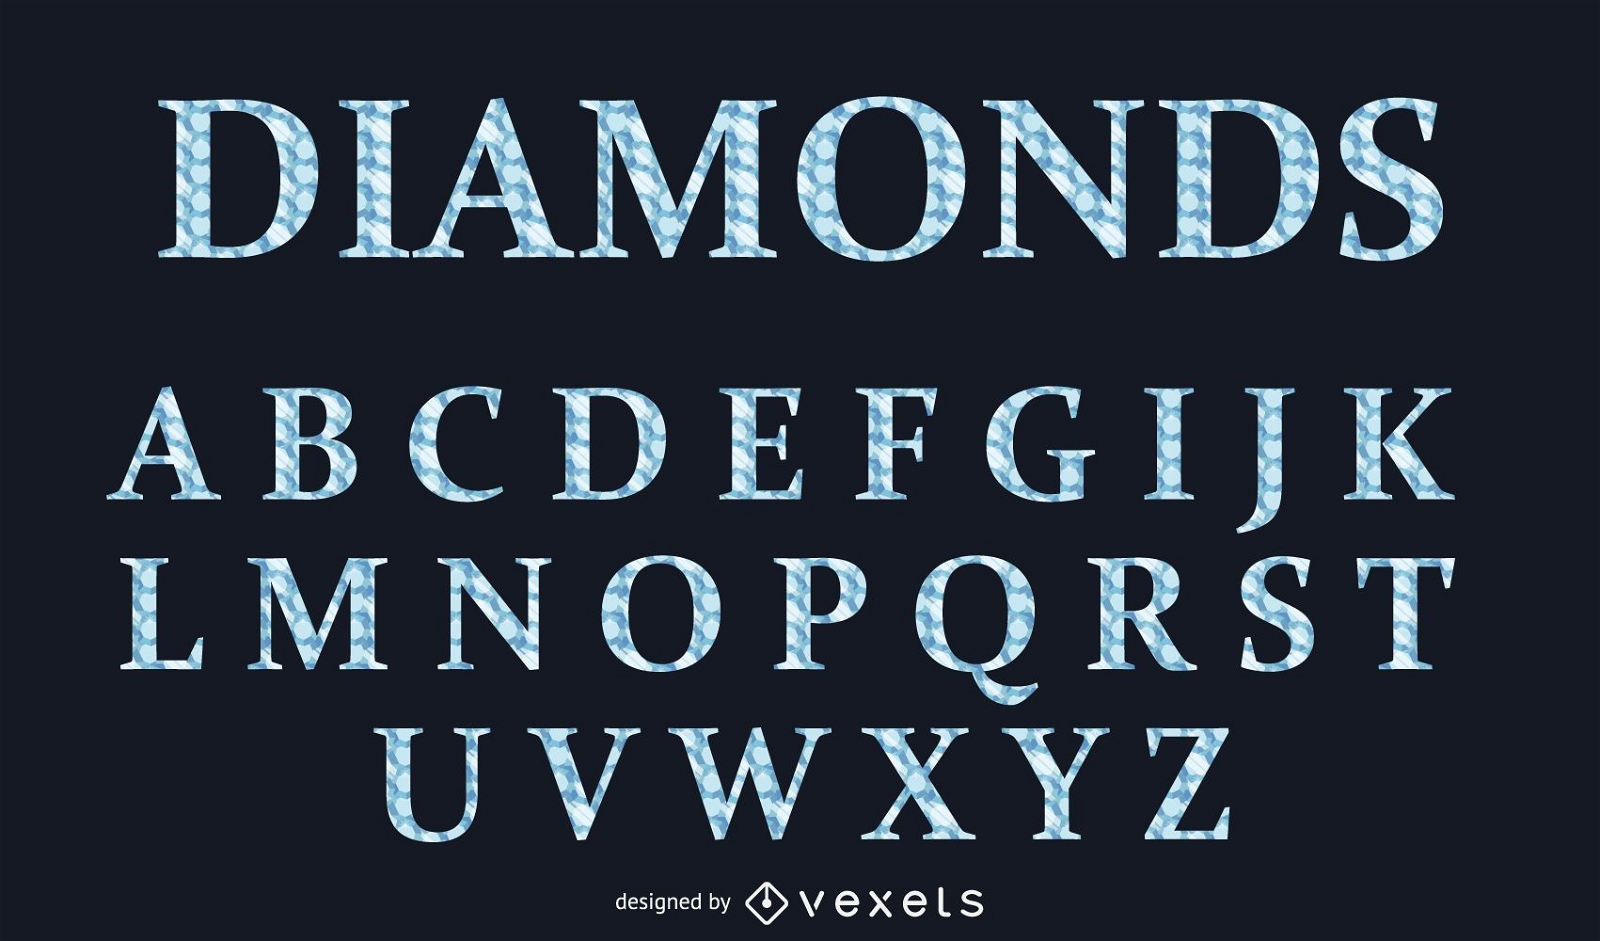 Tipo de letra alfab?tica do estilo diamante